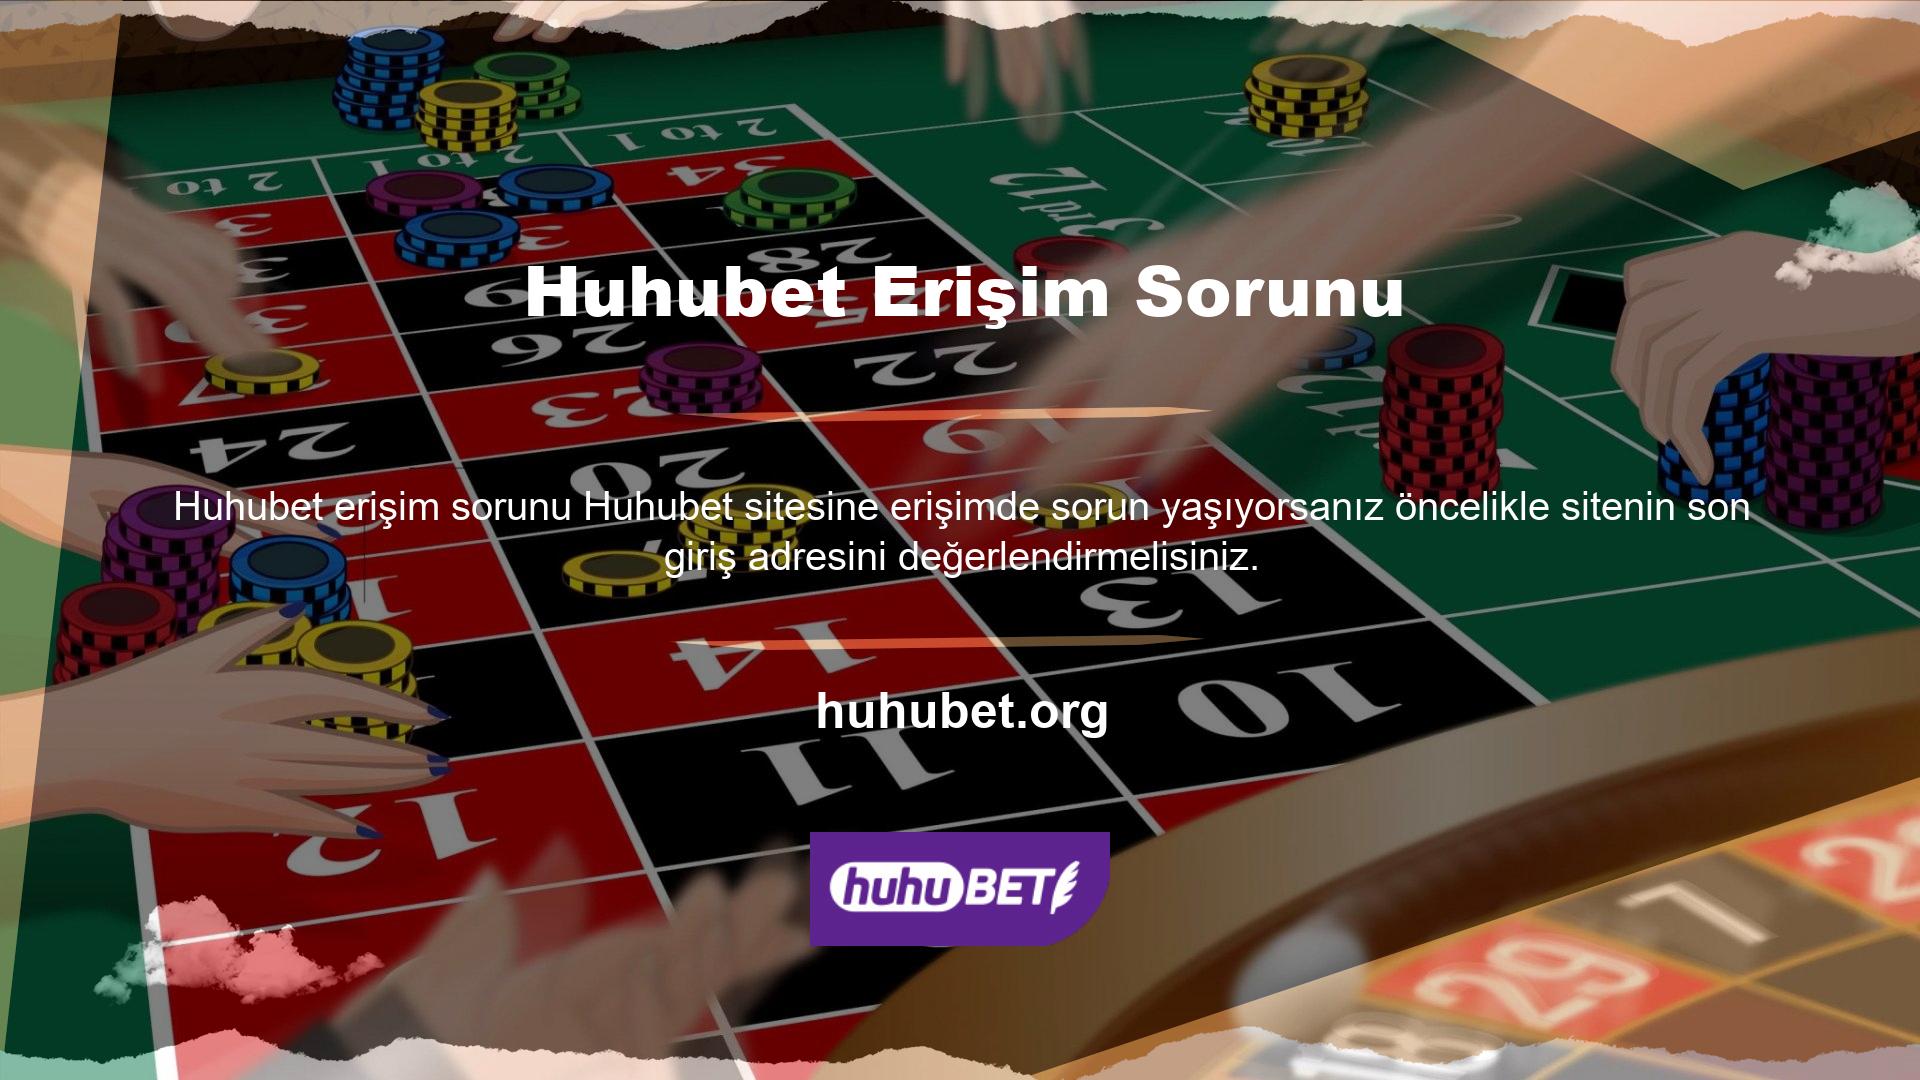 Türk casino sitelerinin geleceğine gelince, erişim adresinin sürekli değiştiğini biliyoruz